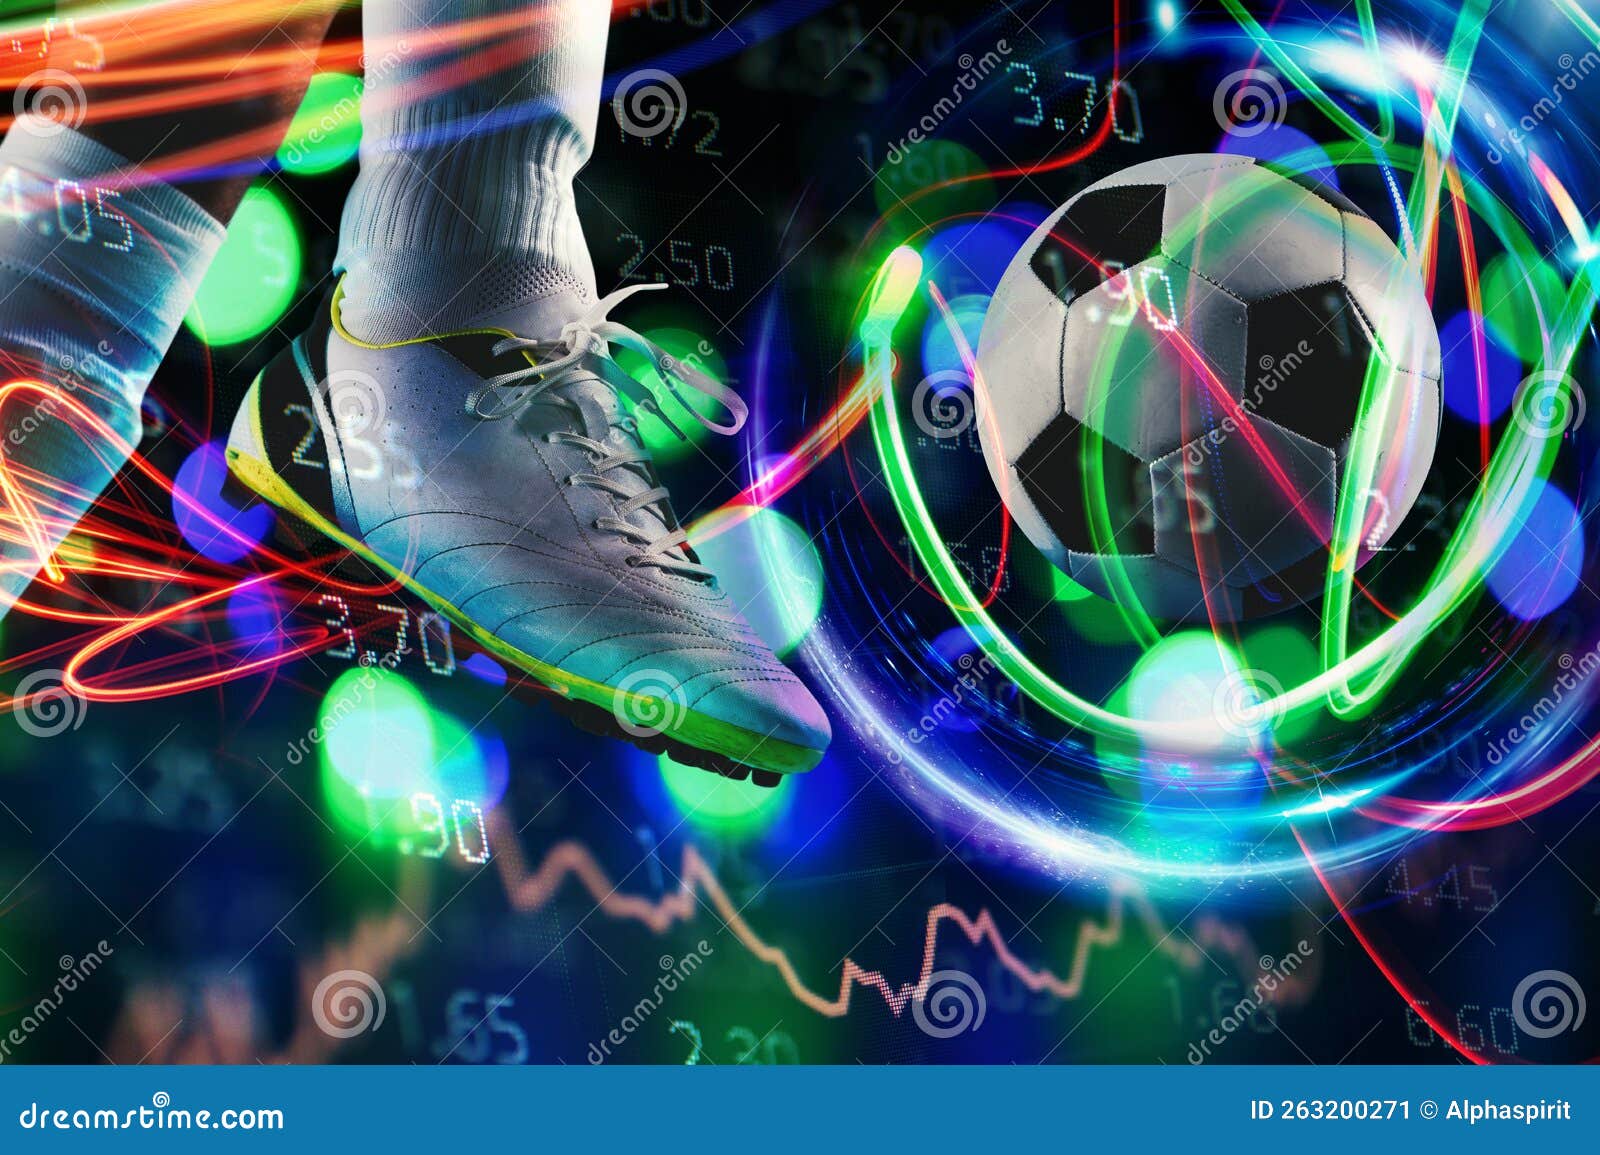 Apostas De Futebol Online E Análises E Estatísticas Para Jogos De Futebol  Imagem de Stock - Imagem de movimento, campeonato: 263200271